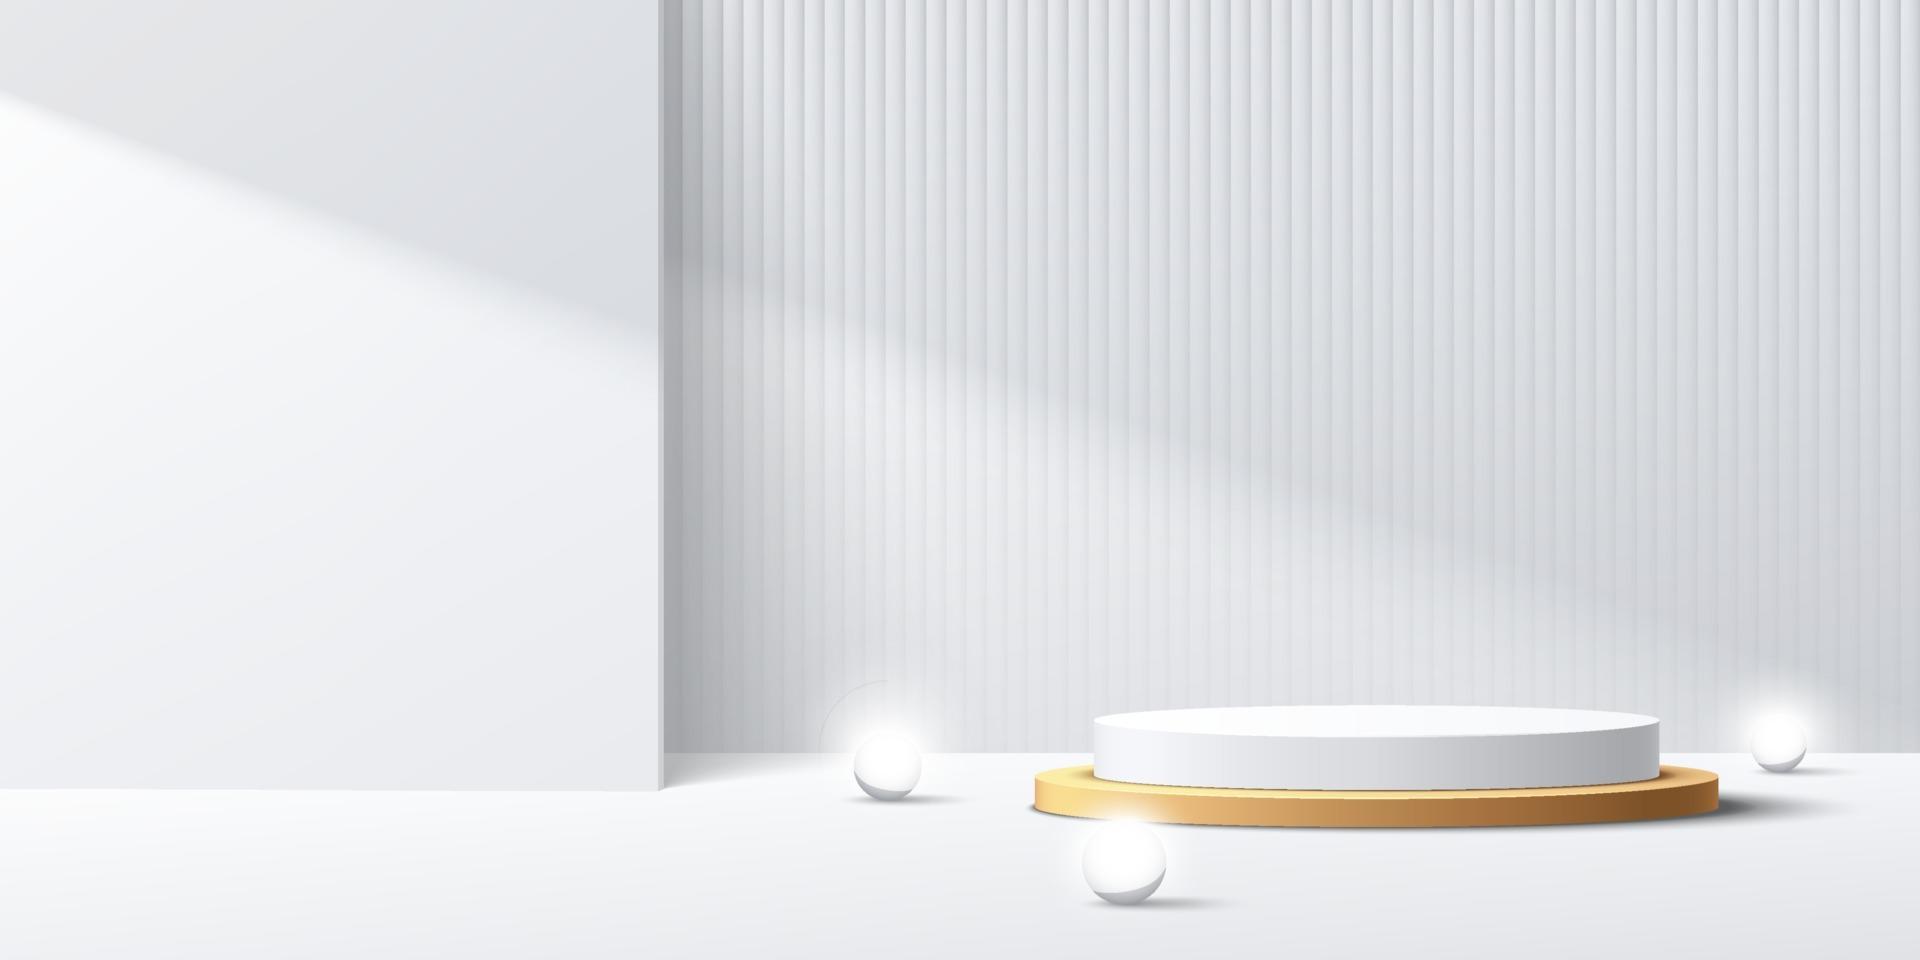 moderno podio de pedestal cilíndrico blanco y dorado con esfera de neón. Escena mínima blanca abstracta. Telón de fondo de textura de rayas verticales en la sombra. Representación vectorial Presentación de exhibición de productos de forma 3D. vector